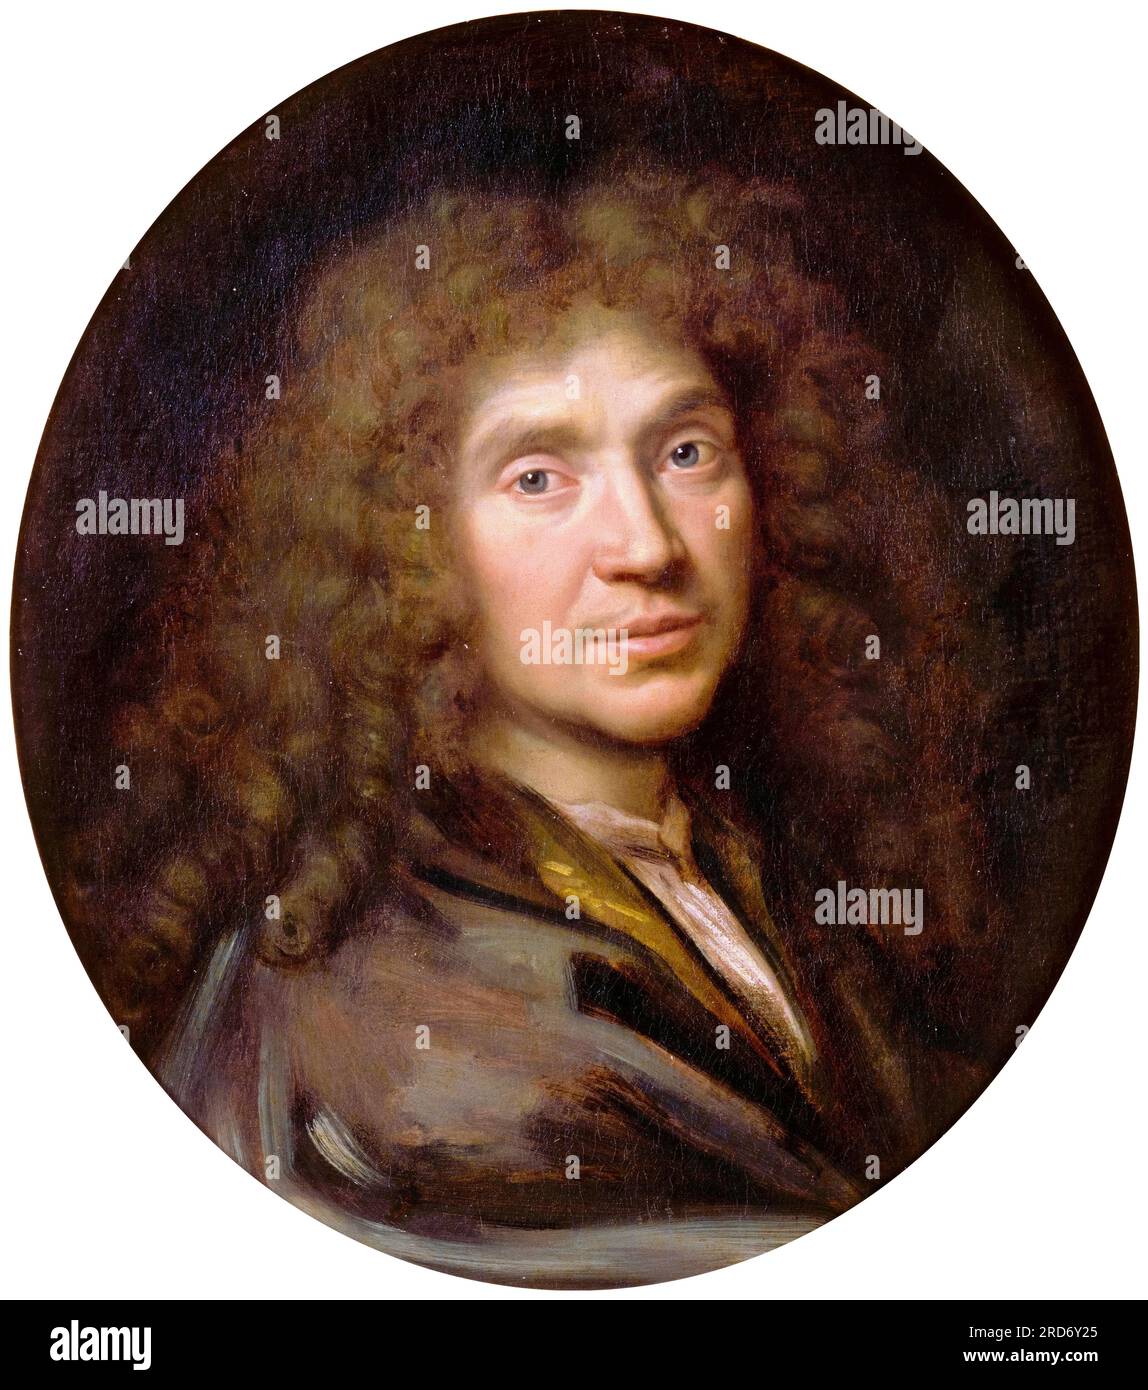 Molière (Jean-Baptiste Poquelin, 1622-1673), portrait du dramaturge, acteur et poète français à l'huile sur toile par Pierre Mignard, vers 1658 Banque D'Images